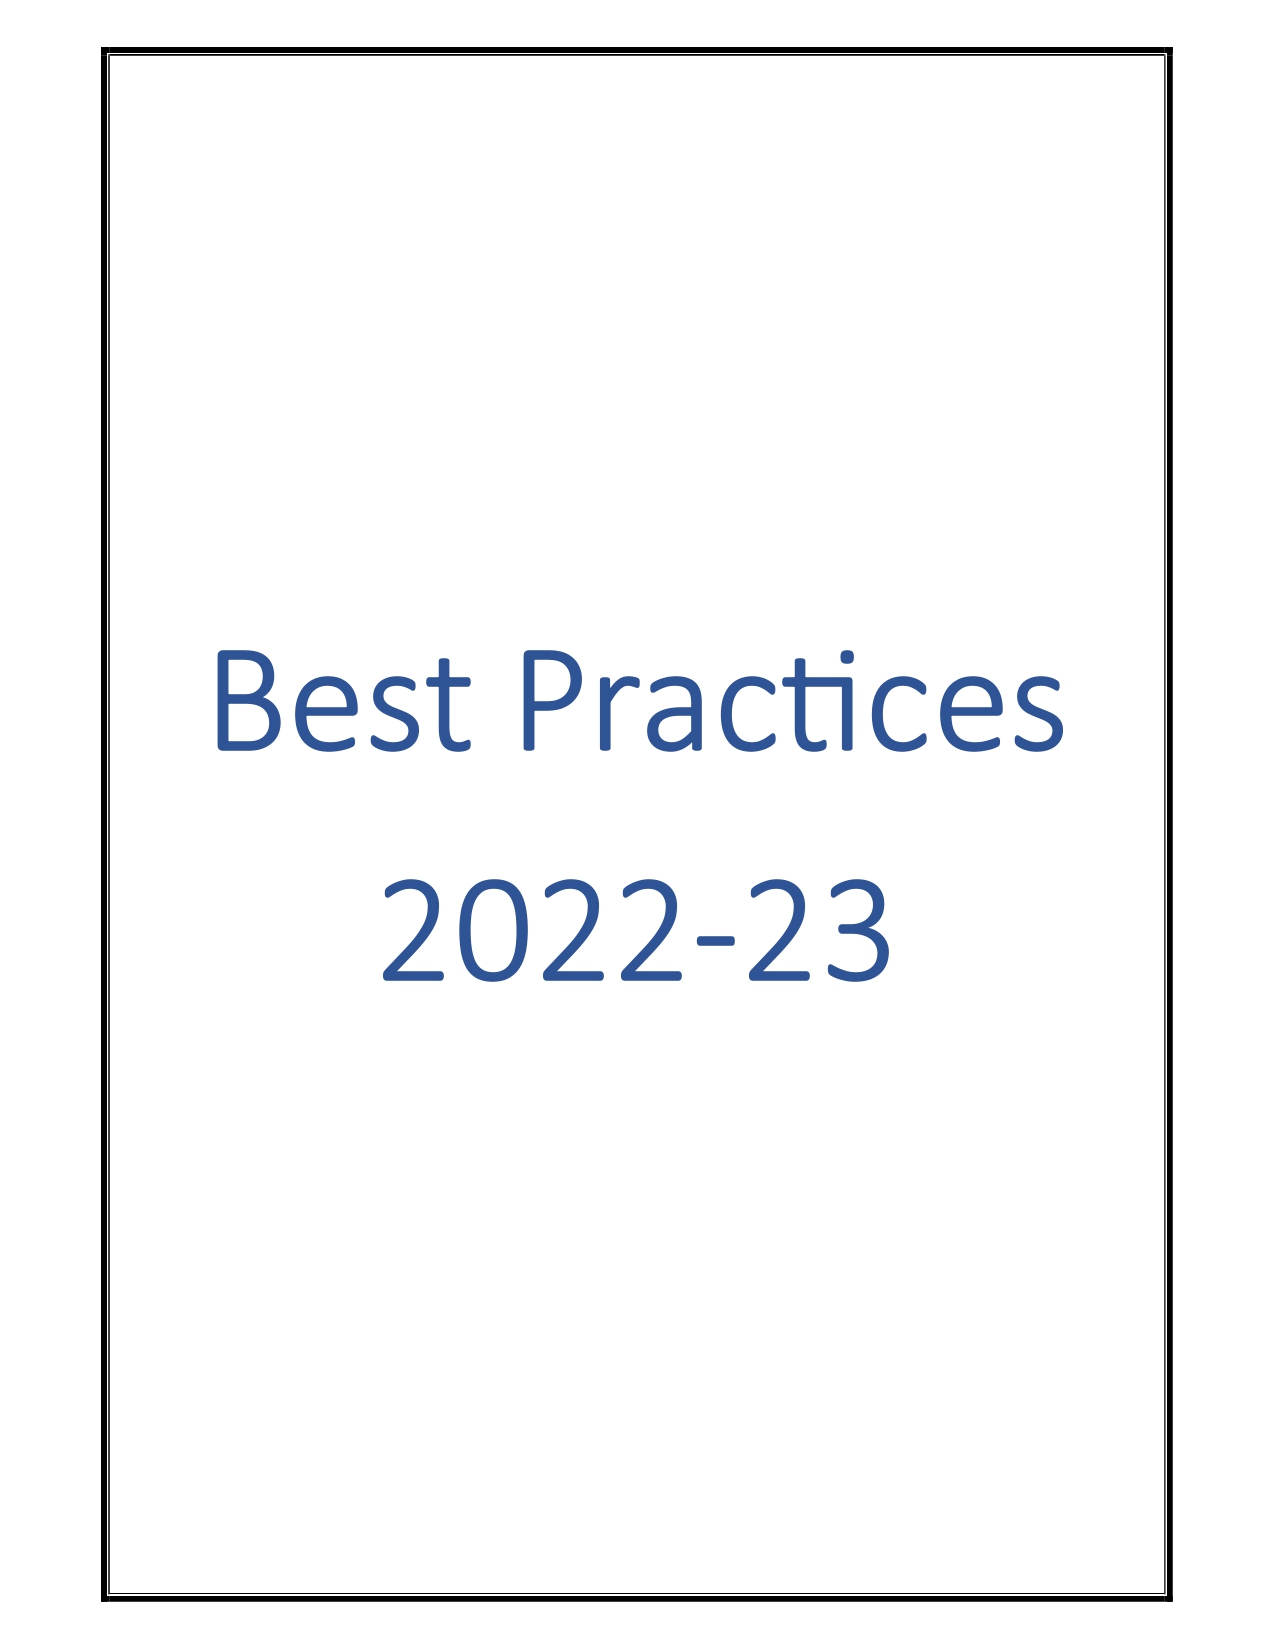 Best Practice 2022-23